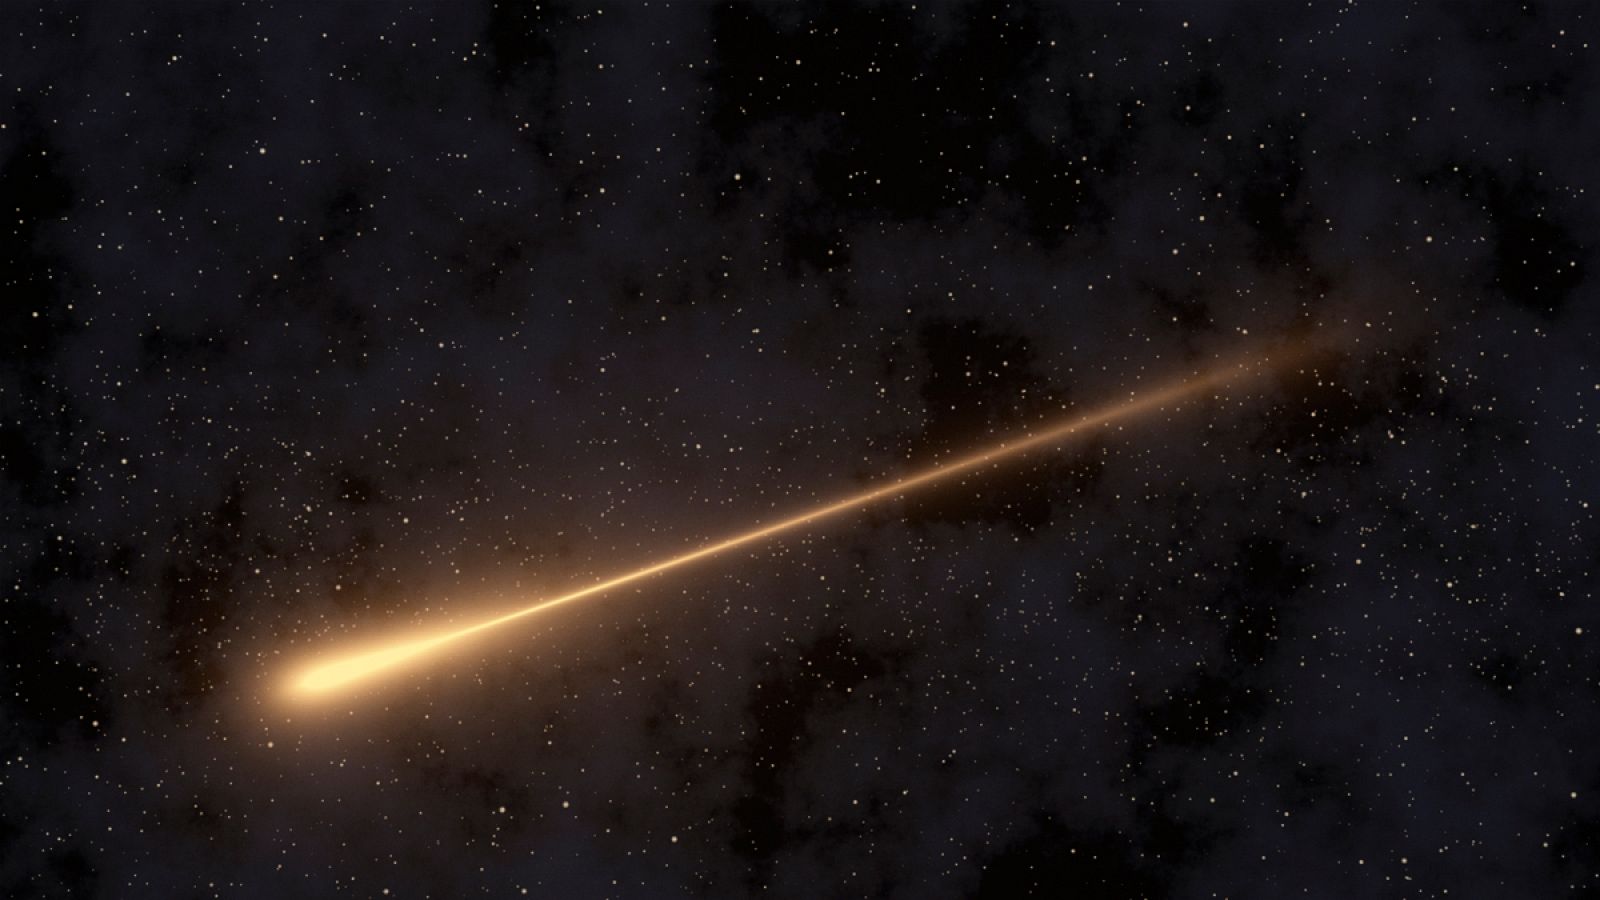 Los objetos brillantes son los restos de la cola del cometa Halley cruzando la atmósfera.